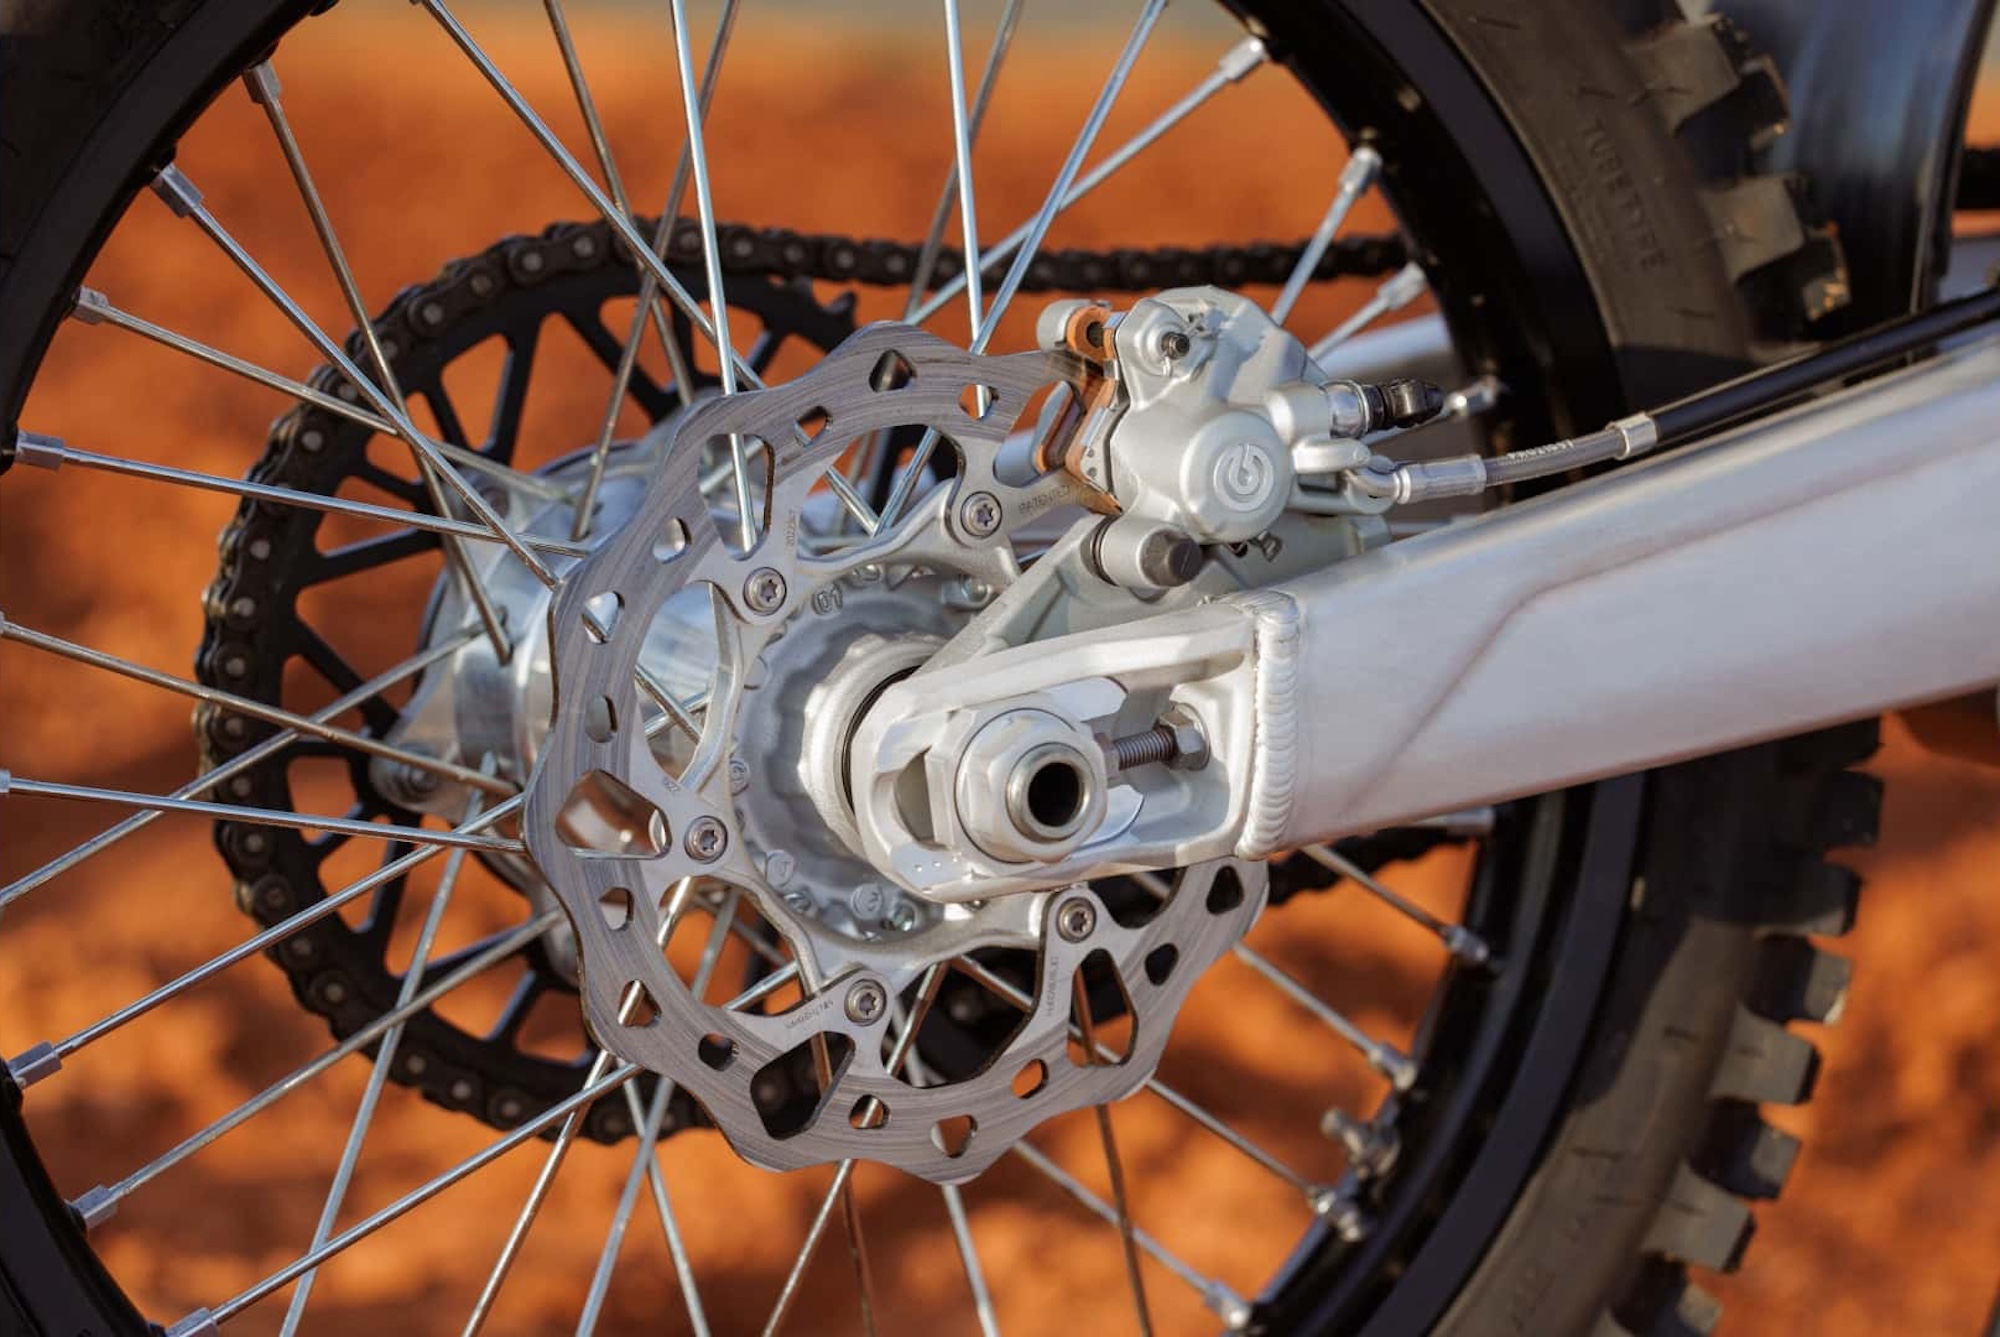 Rear side view of a motocross wheel.